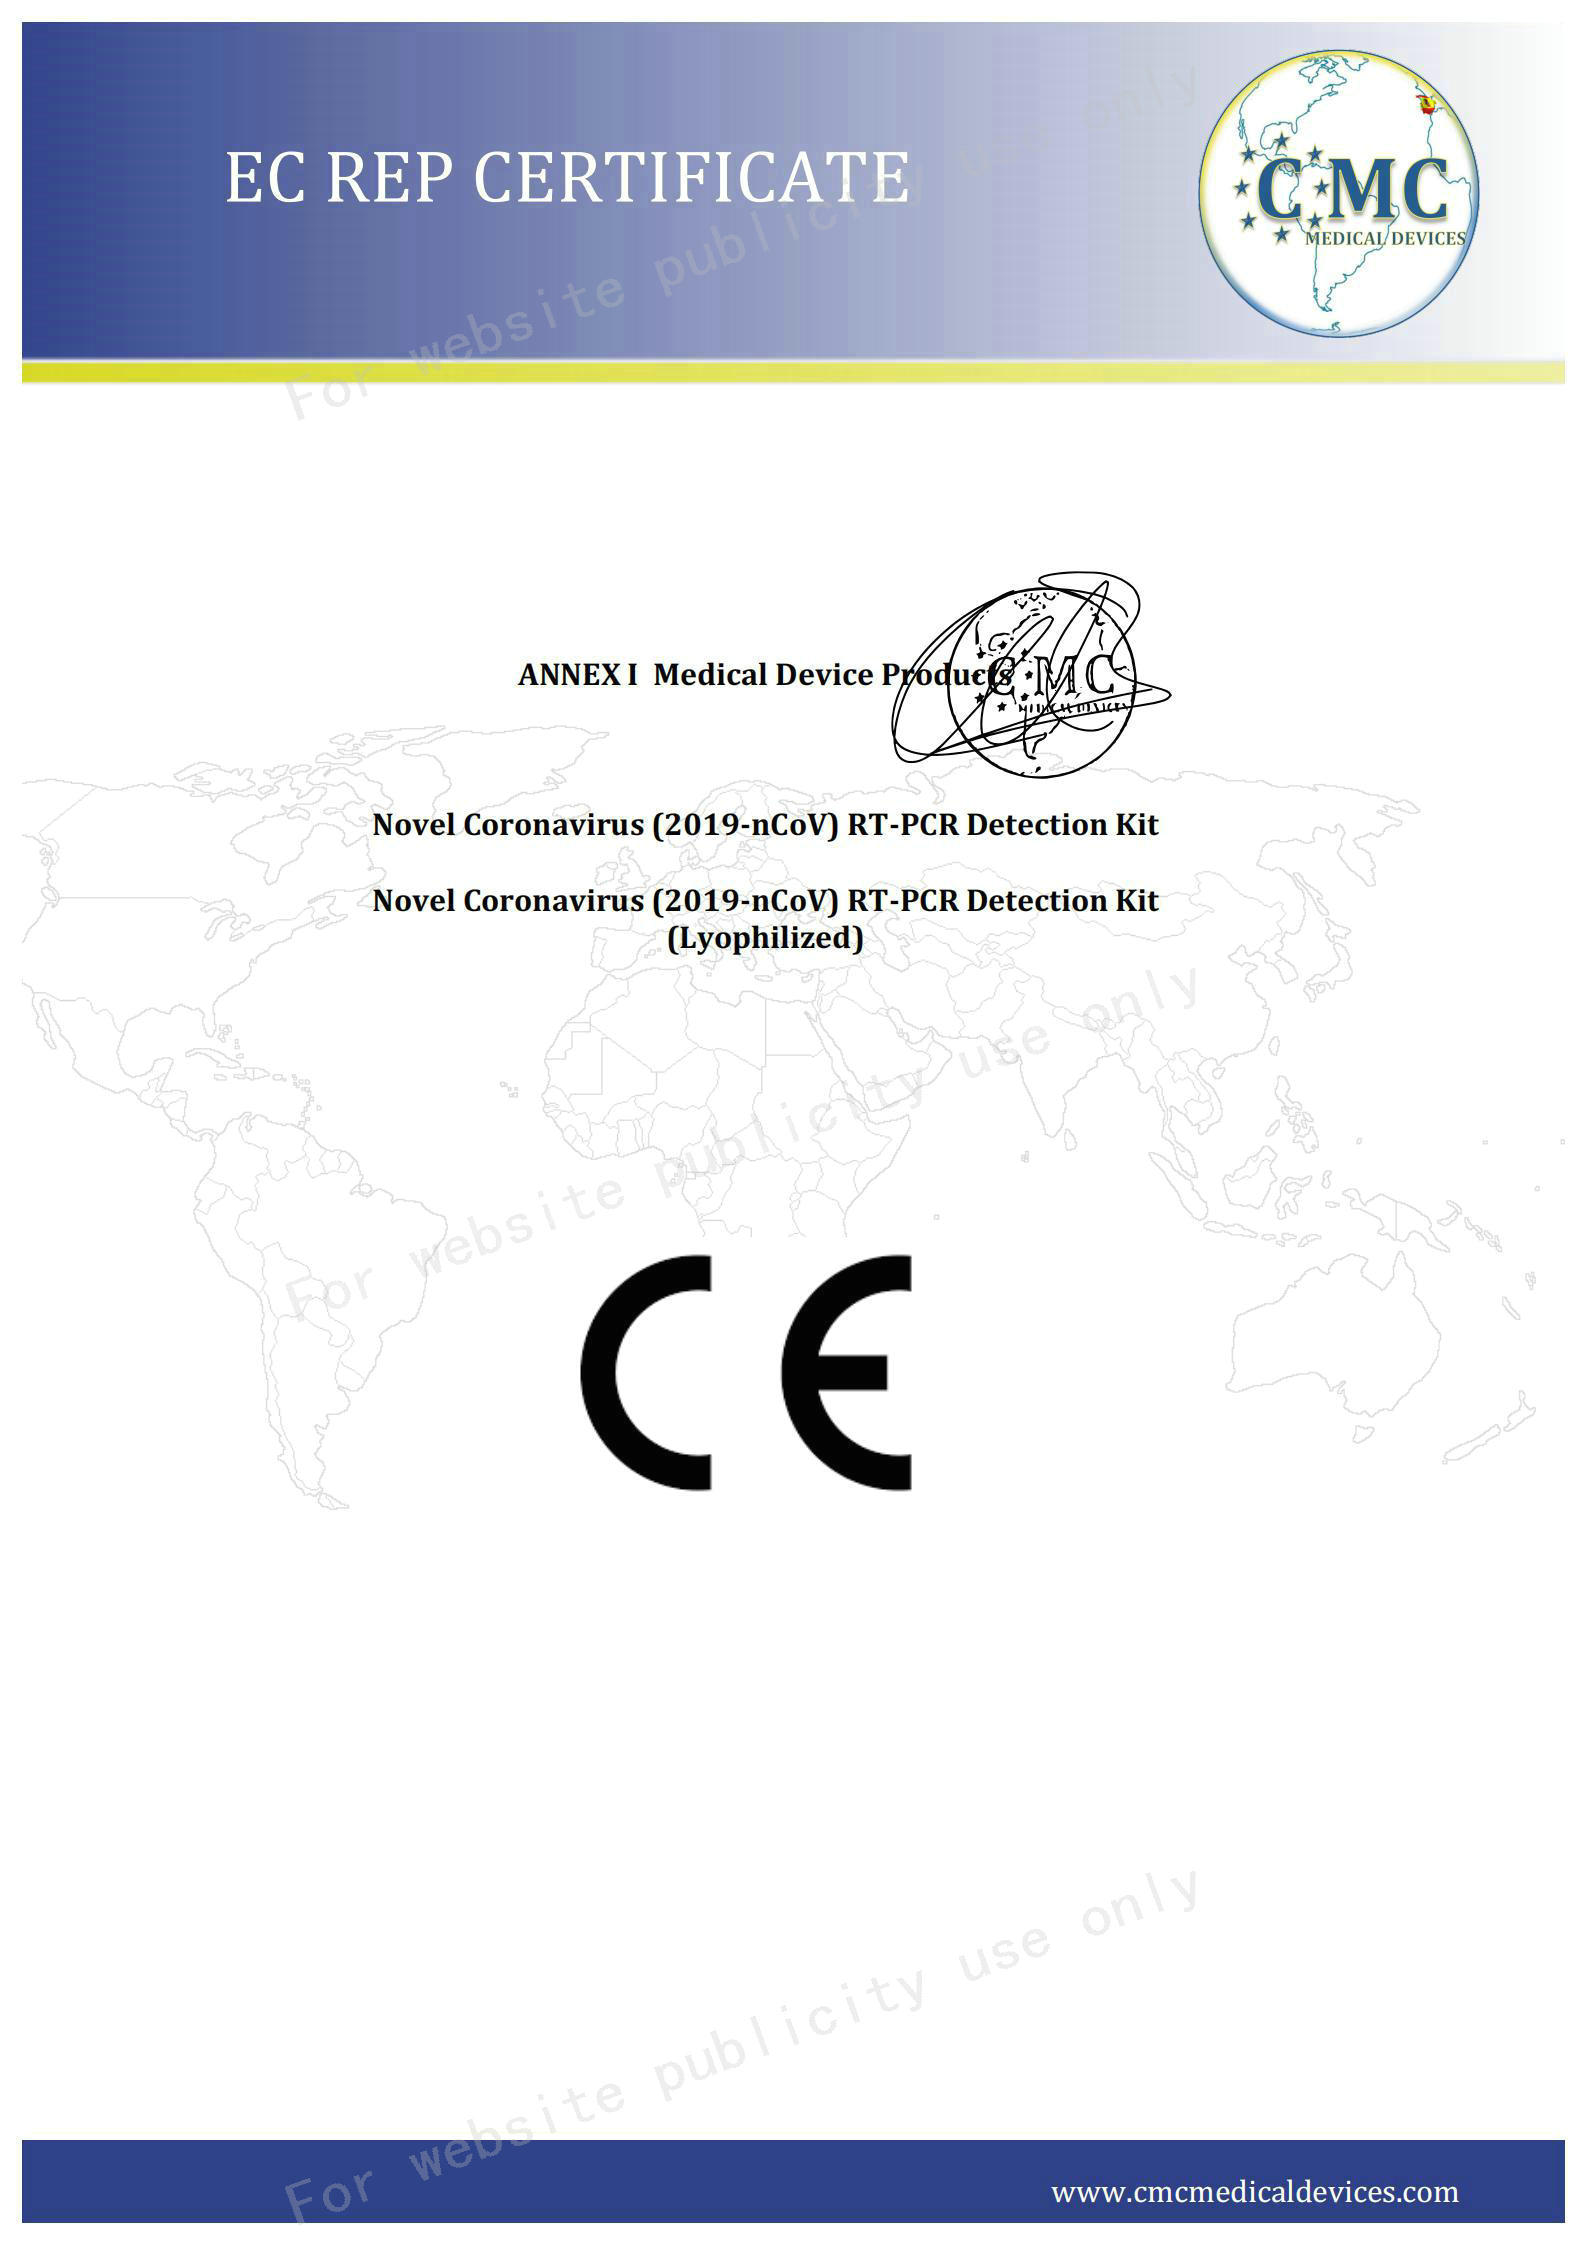 02 Сертифікат CE сторінка2